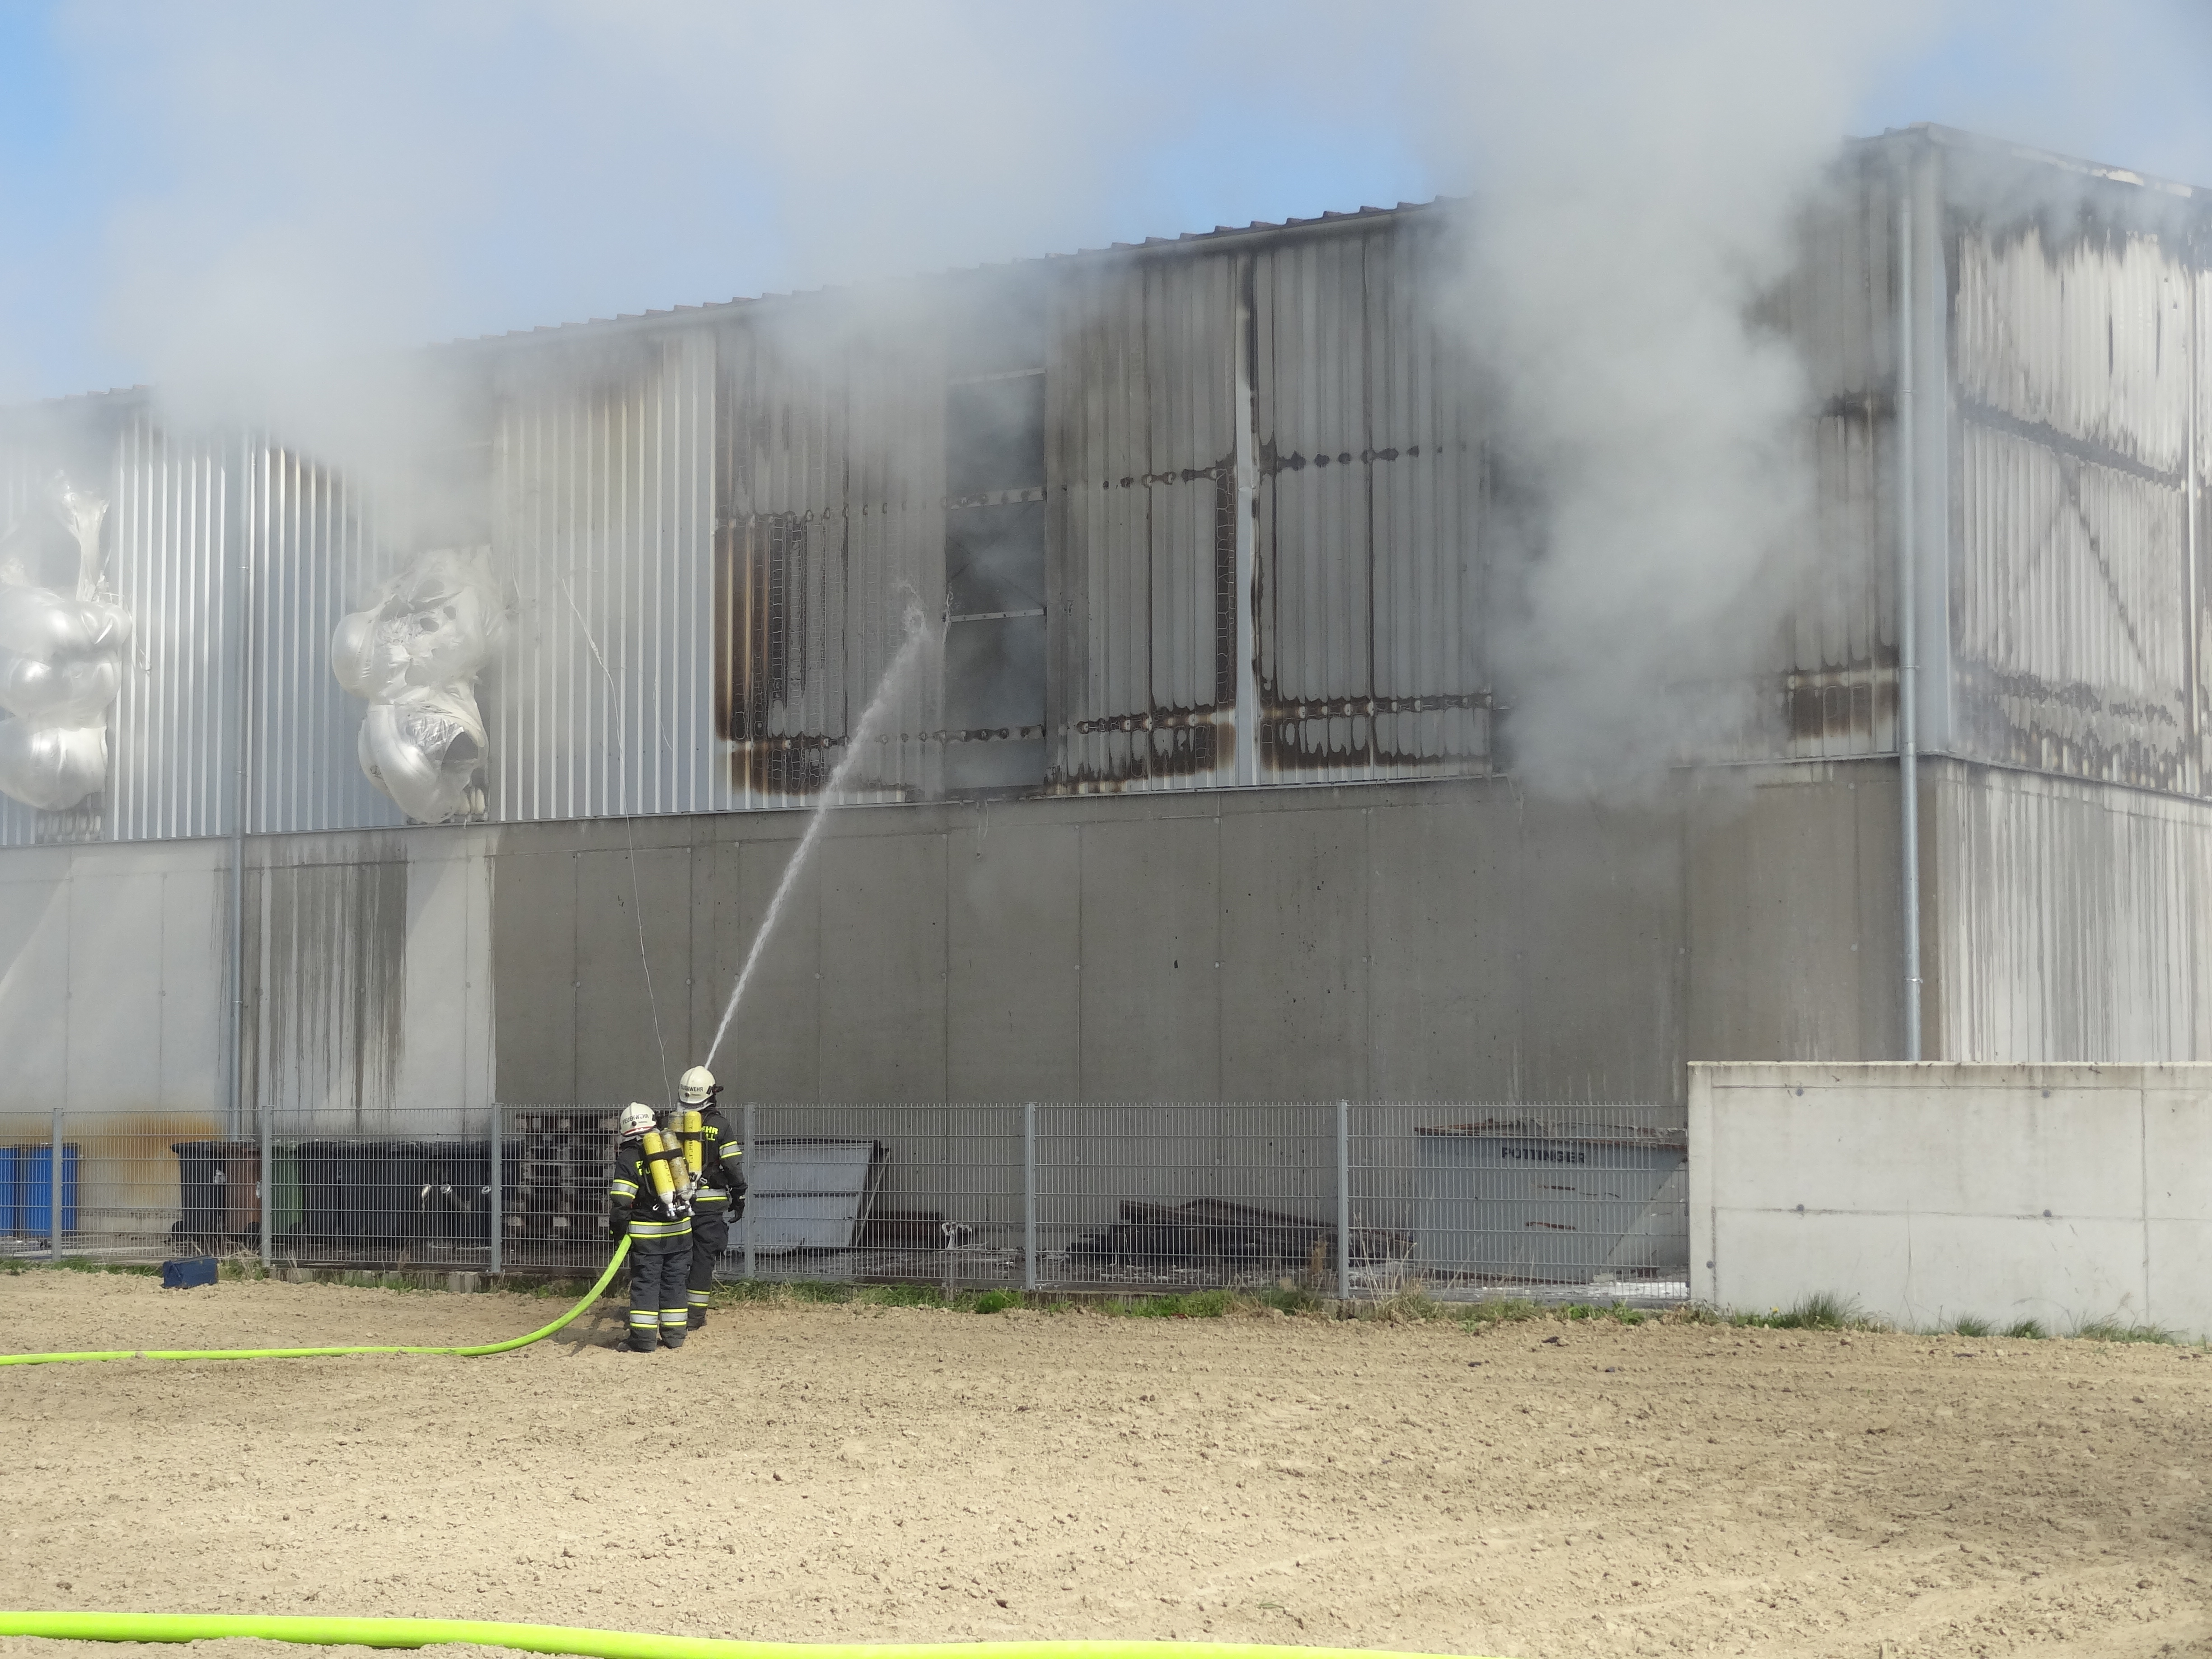 B1 – Lagerhalle in Brand bei Abfallwirtschaftsbetrieb in Wieselburg